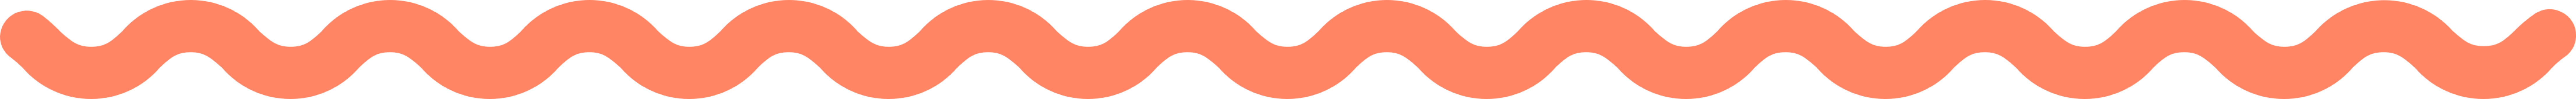 Minderful_Wave_long_orange-1